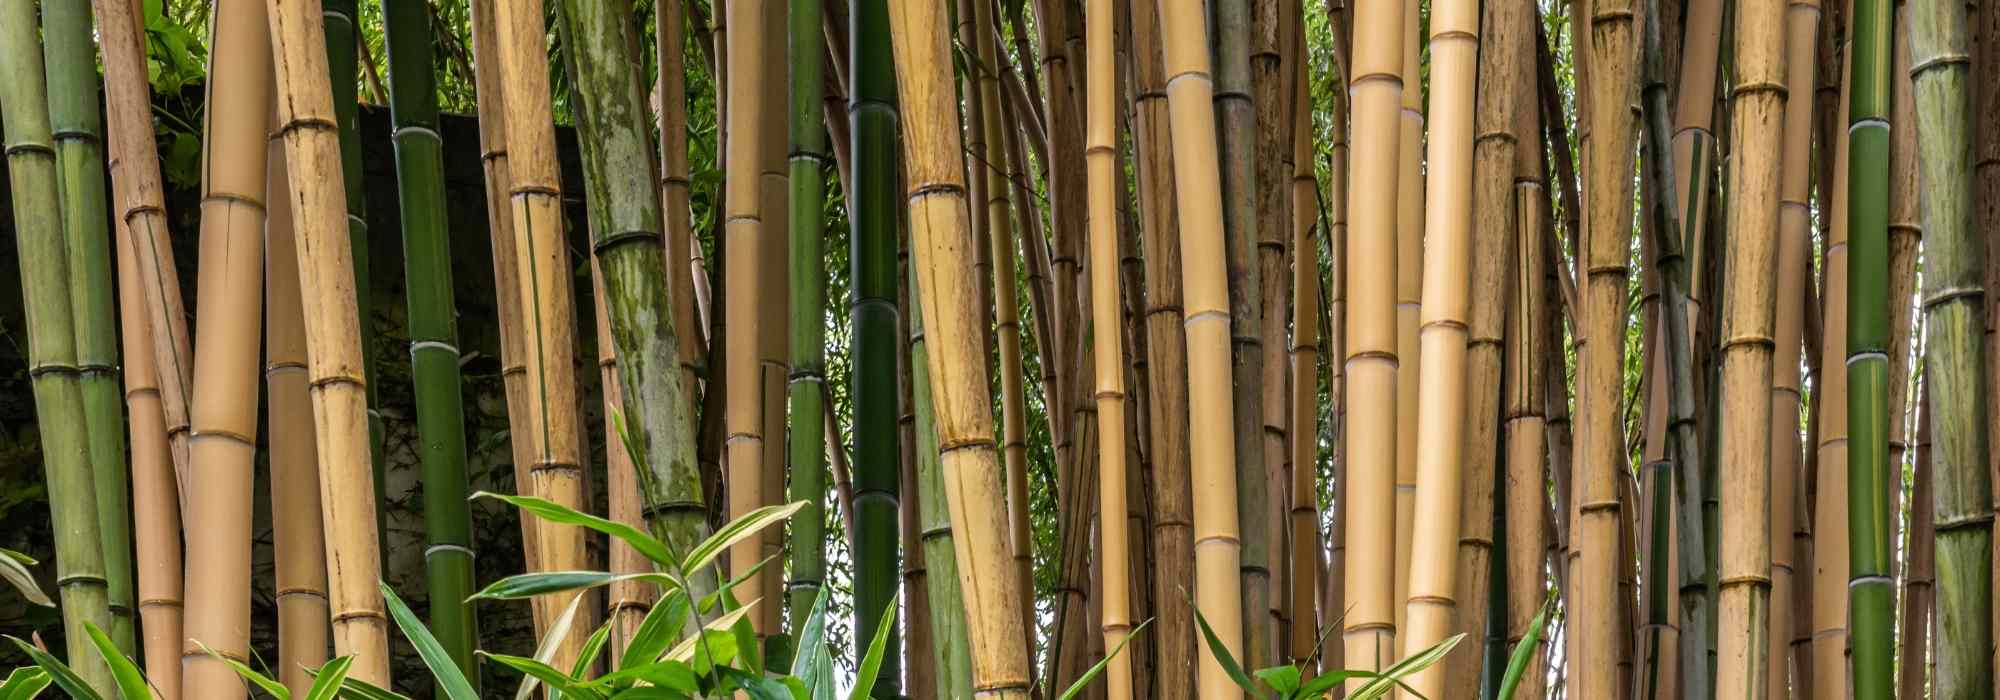 Le bambou en déco : 20 idées pour l'adopter chez vous